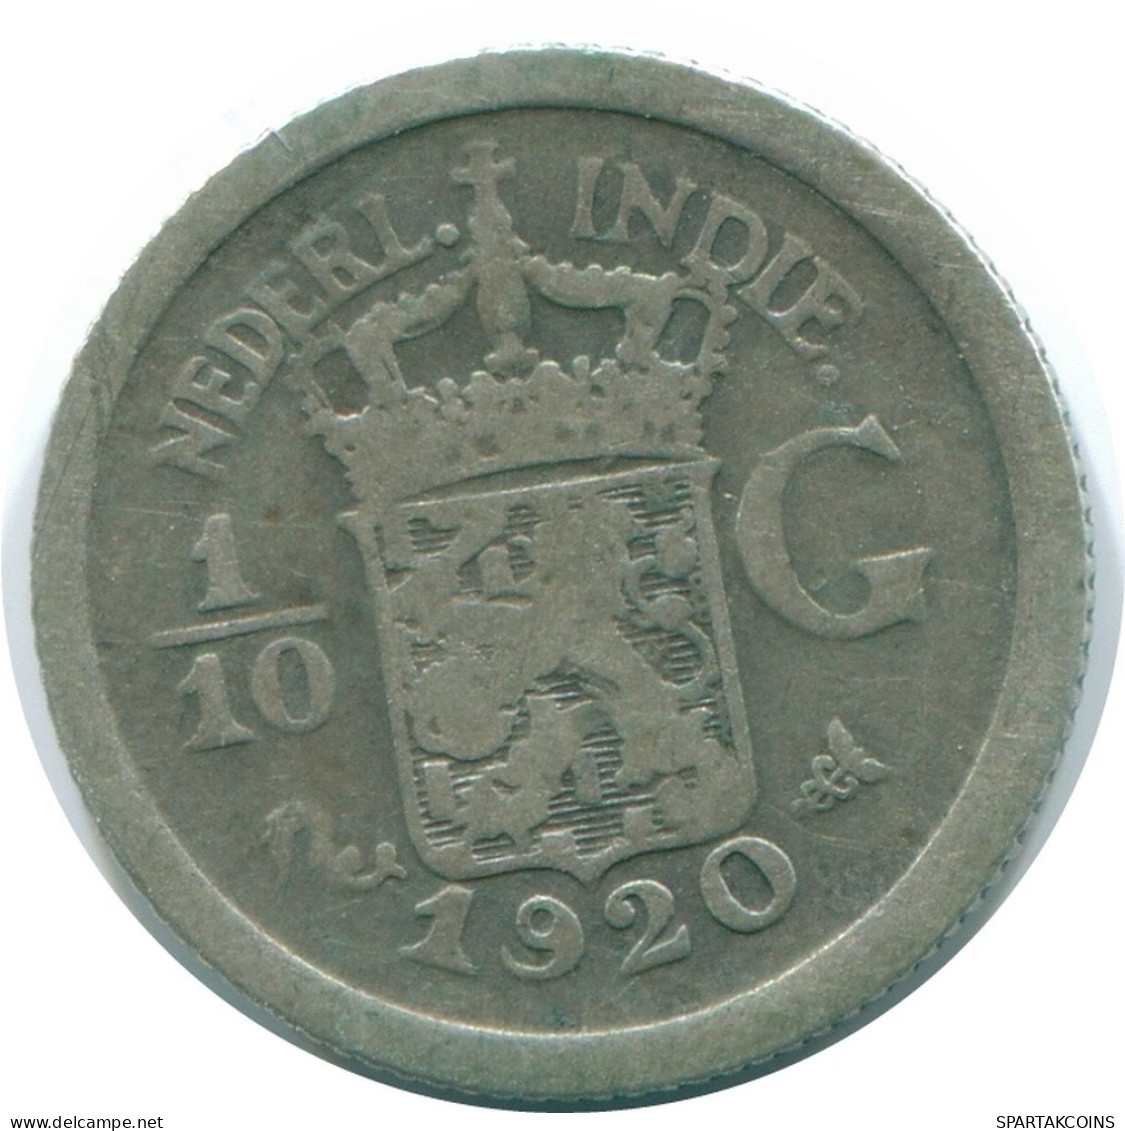 1/10 GULDEN 1920 INDIAS ORIENTALES DE LOS PAÍSES BAJOS PLATA #NL13412.3.E.A - Dutch East Indies